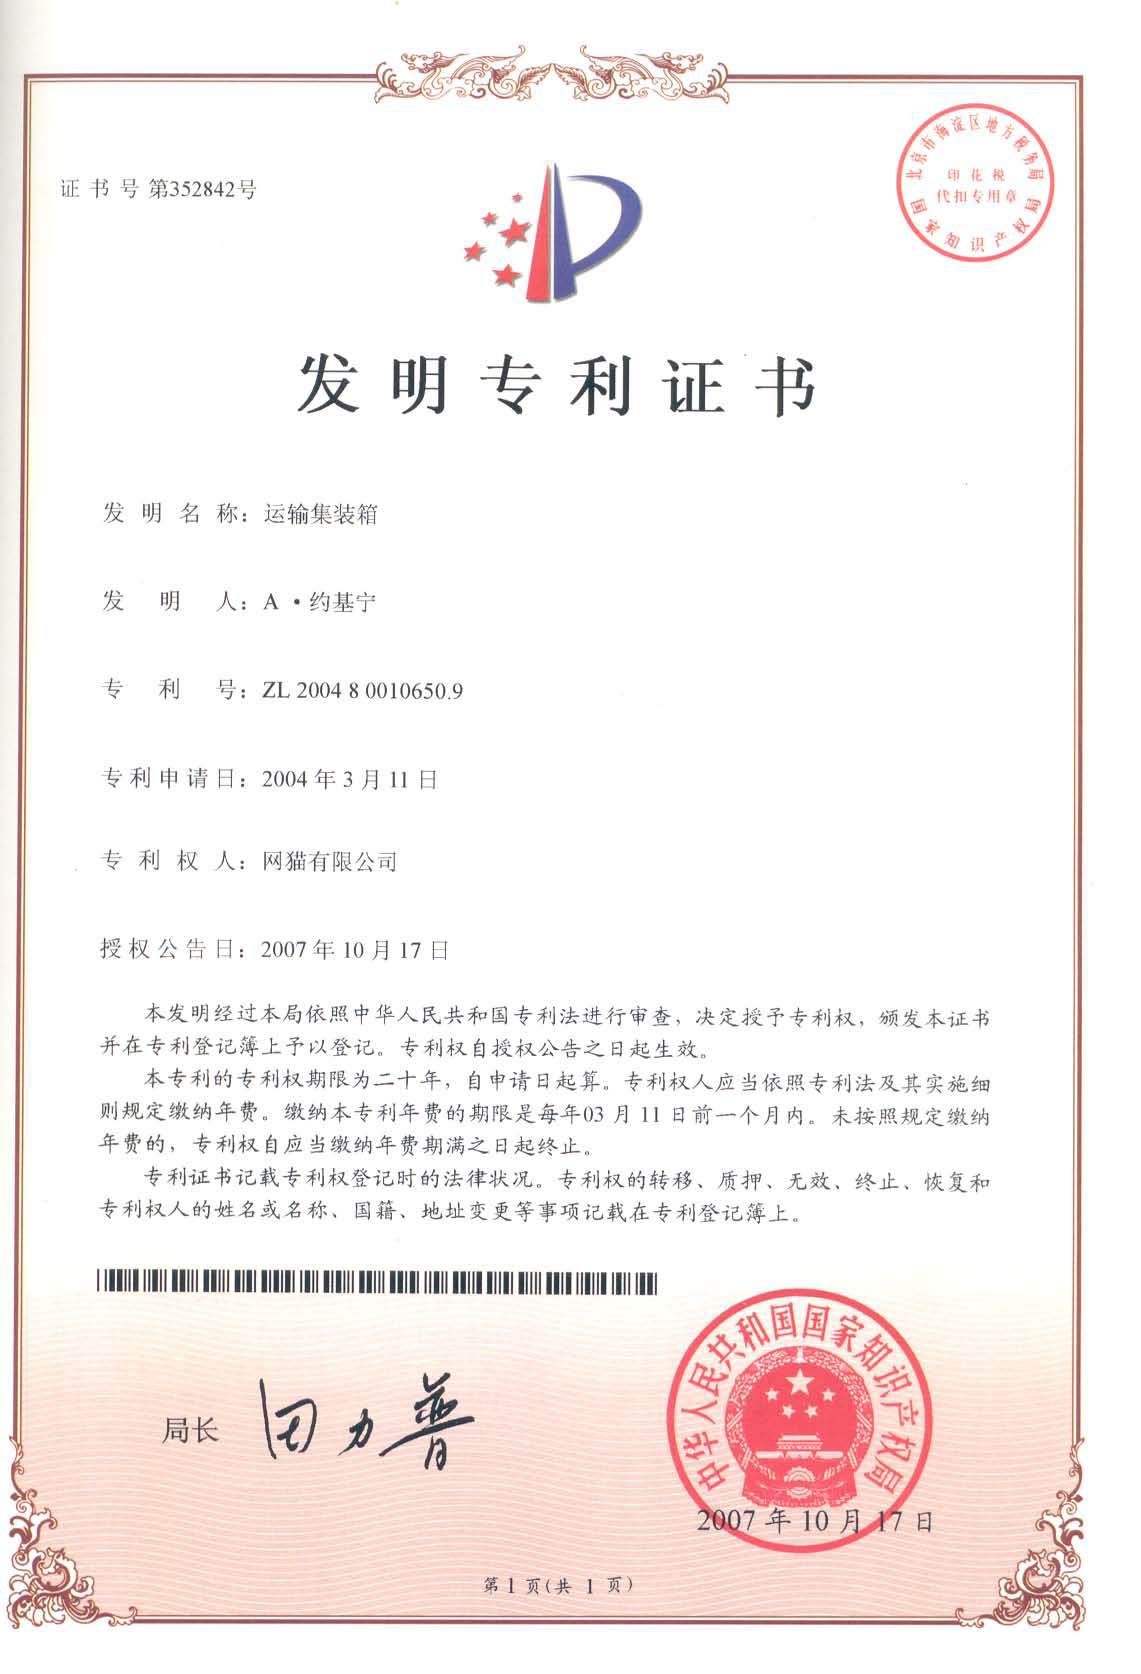 China patent identity page